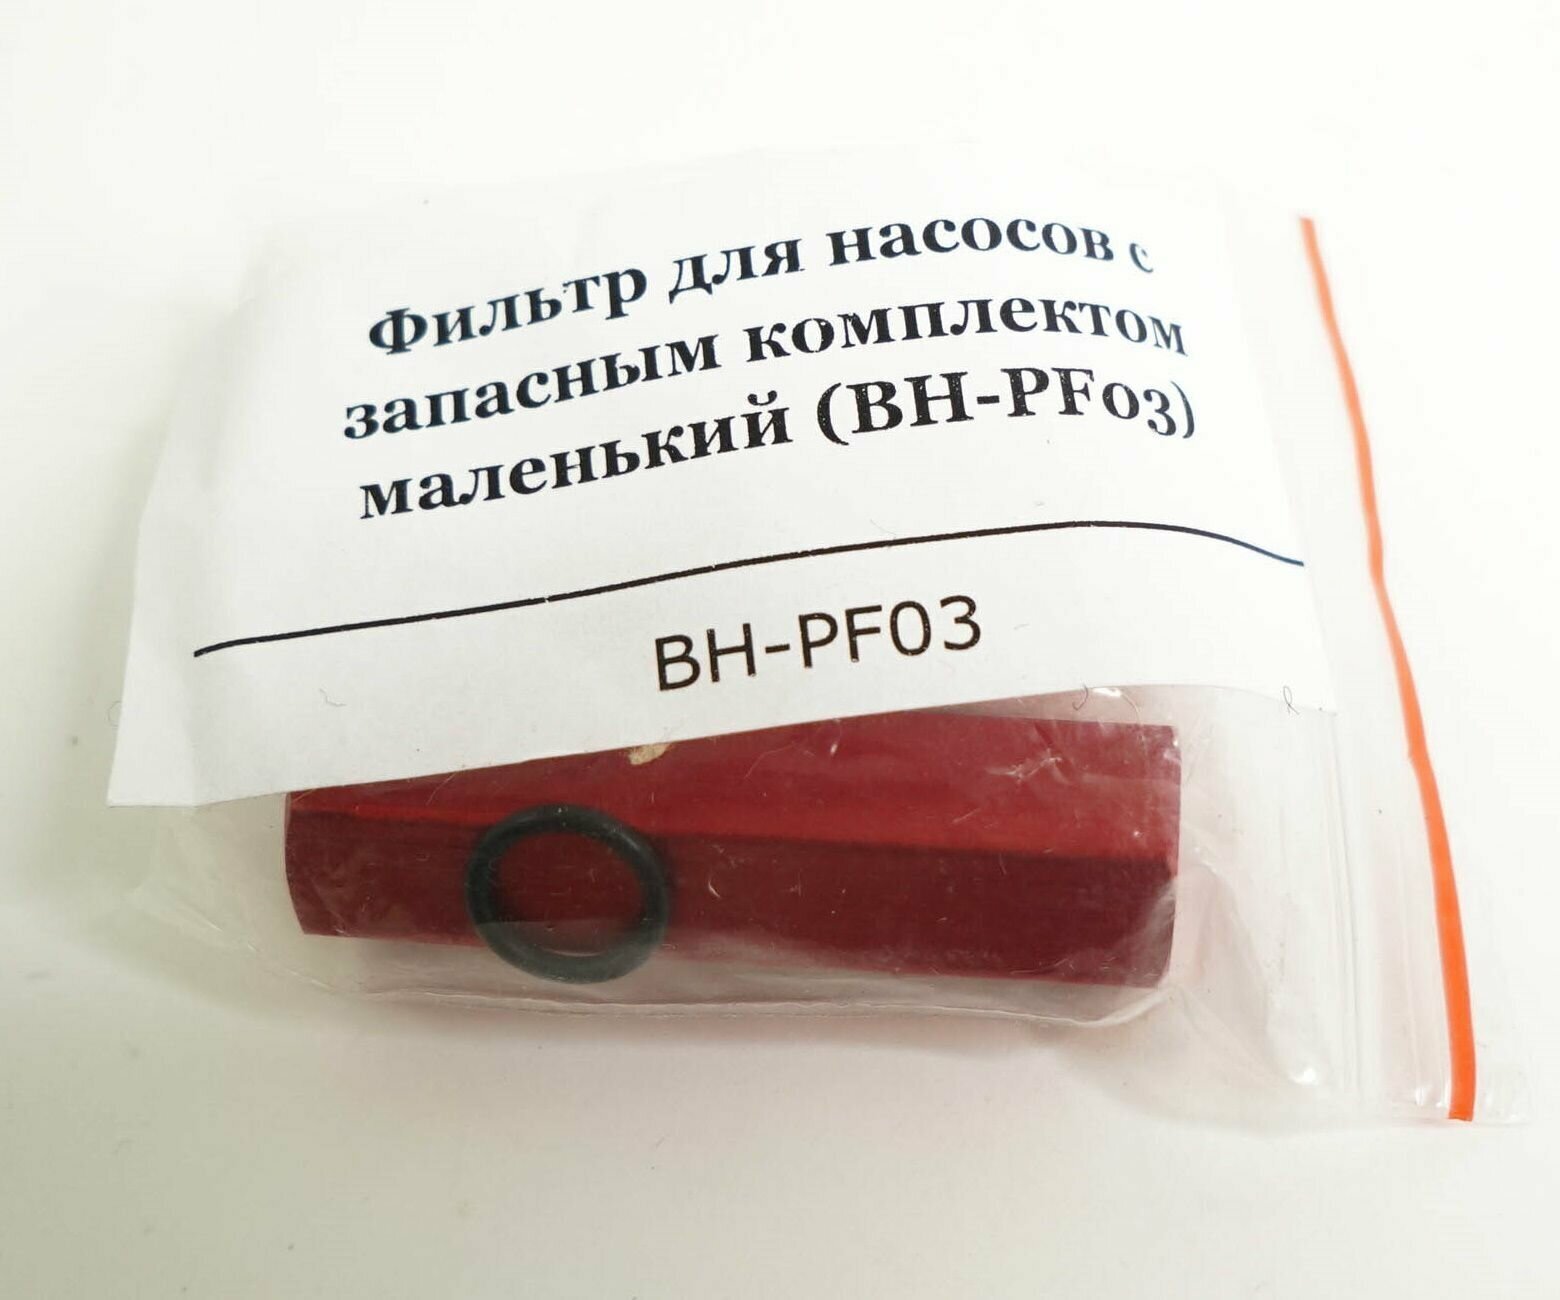 Фильтр для насосов с запасным комплектом маленький (BH-PF03) - фотография № 3